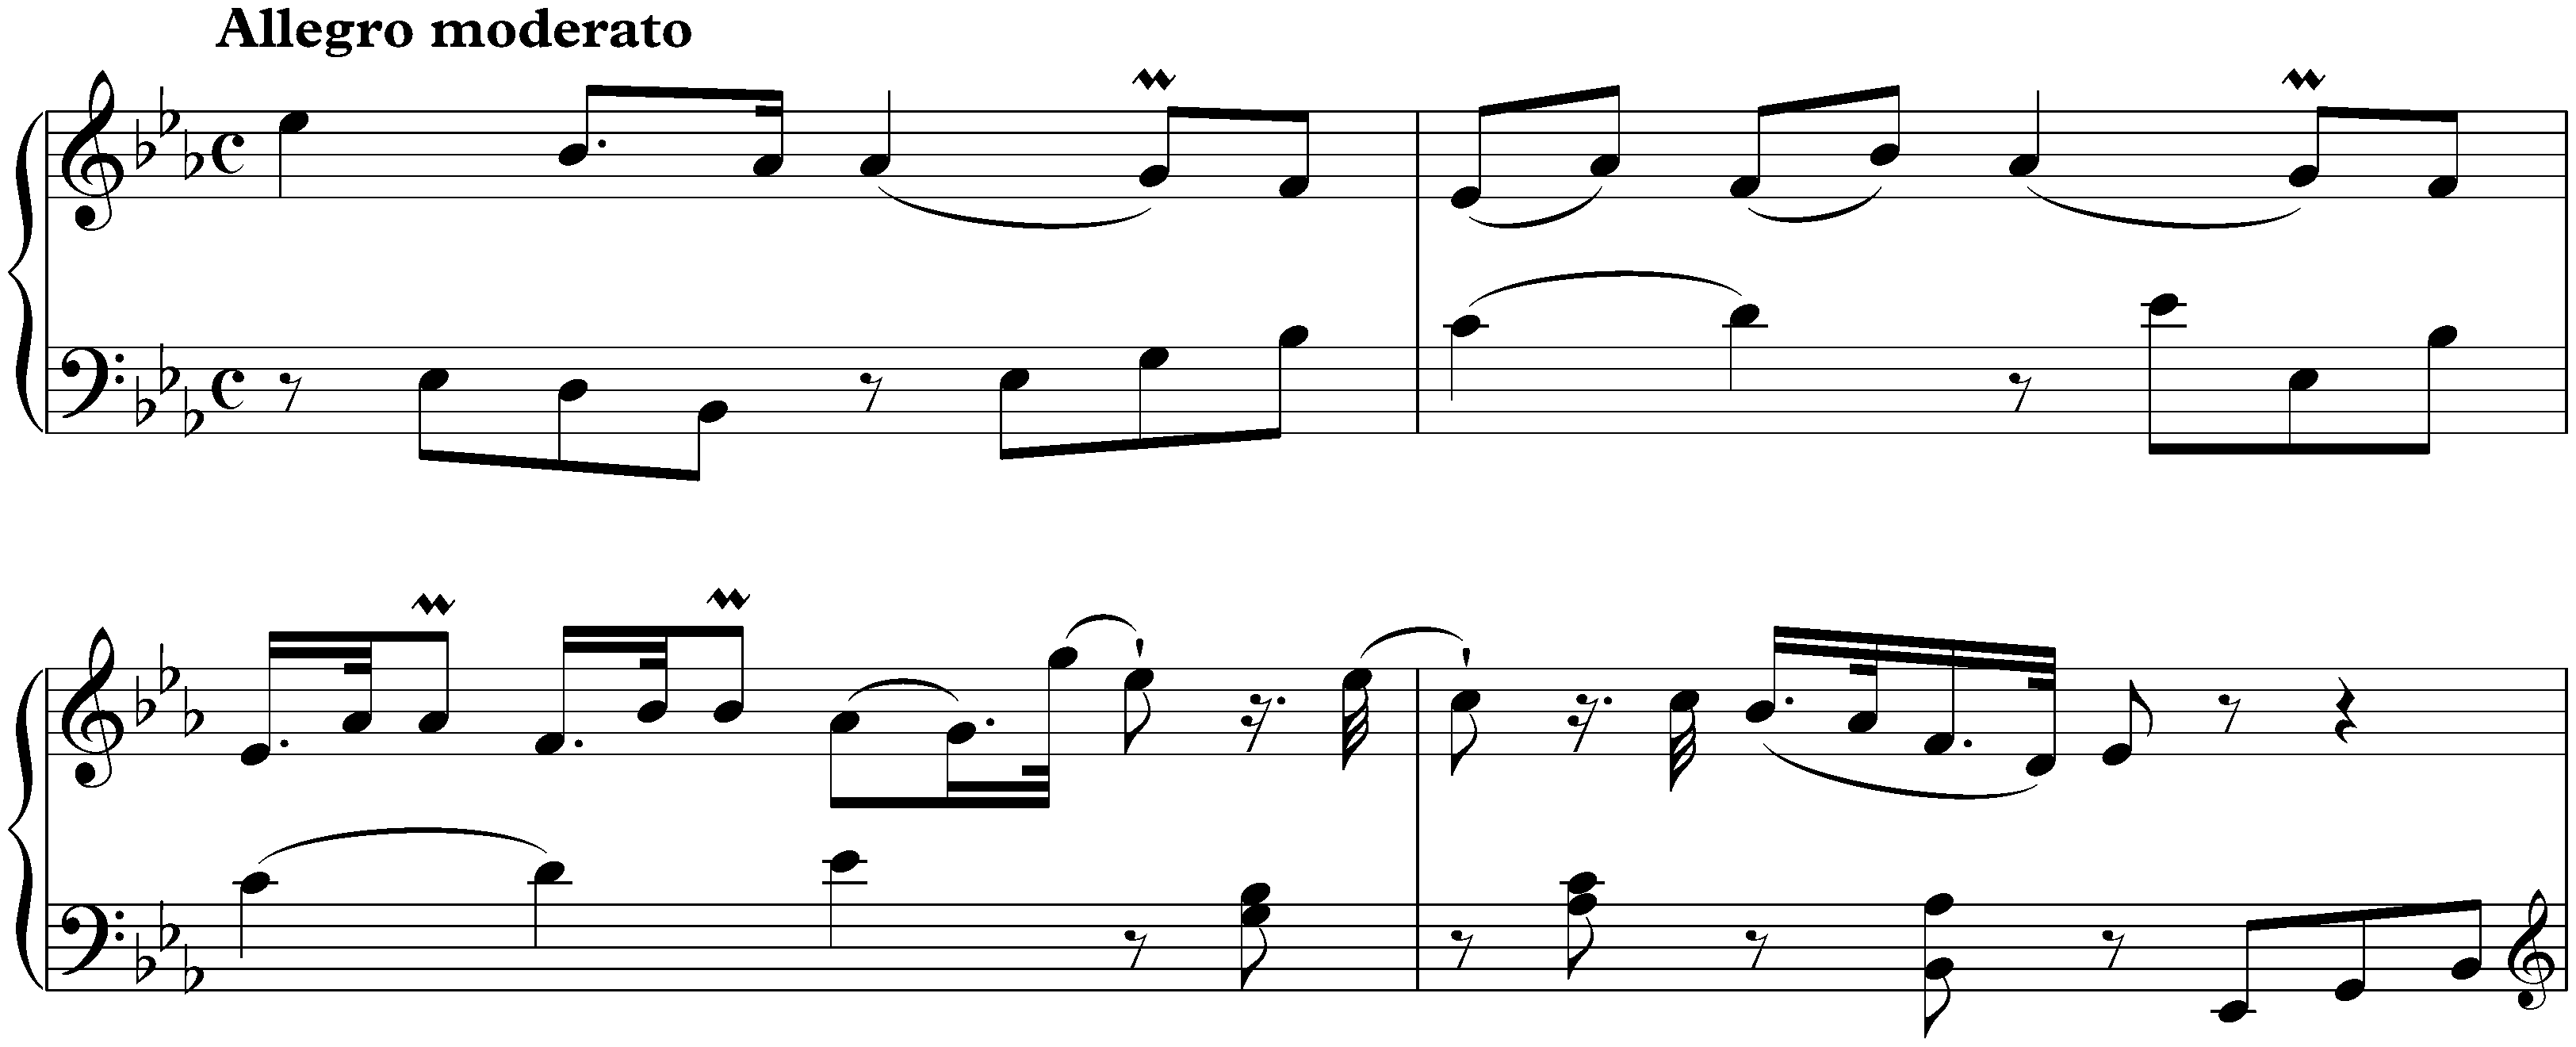 Sonata in E-flat major, Hob. XVI:38; 1. Allegro moderato